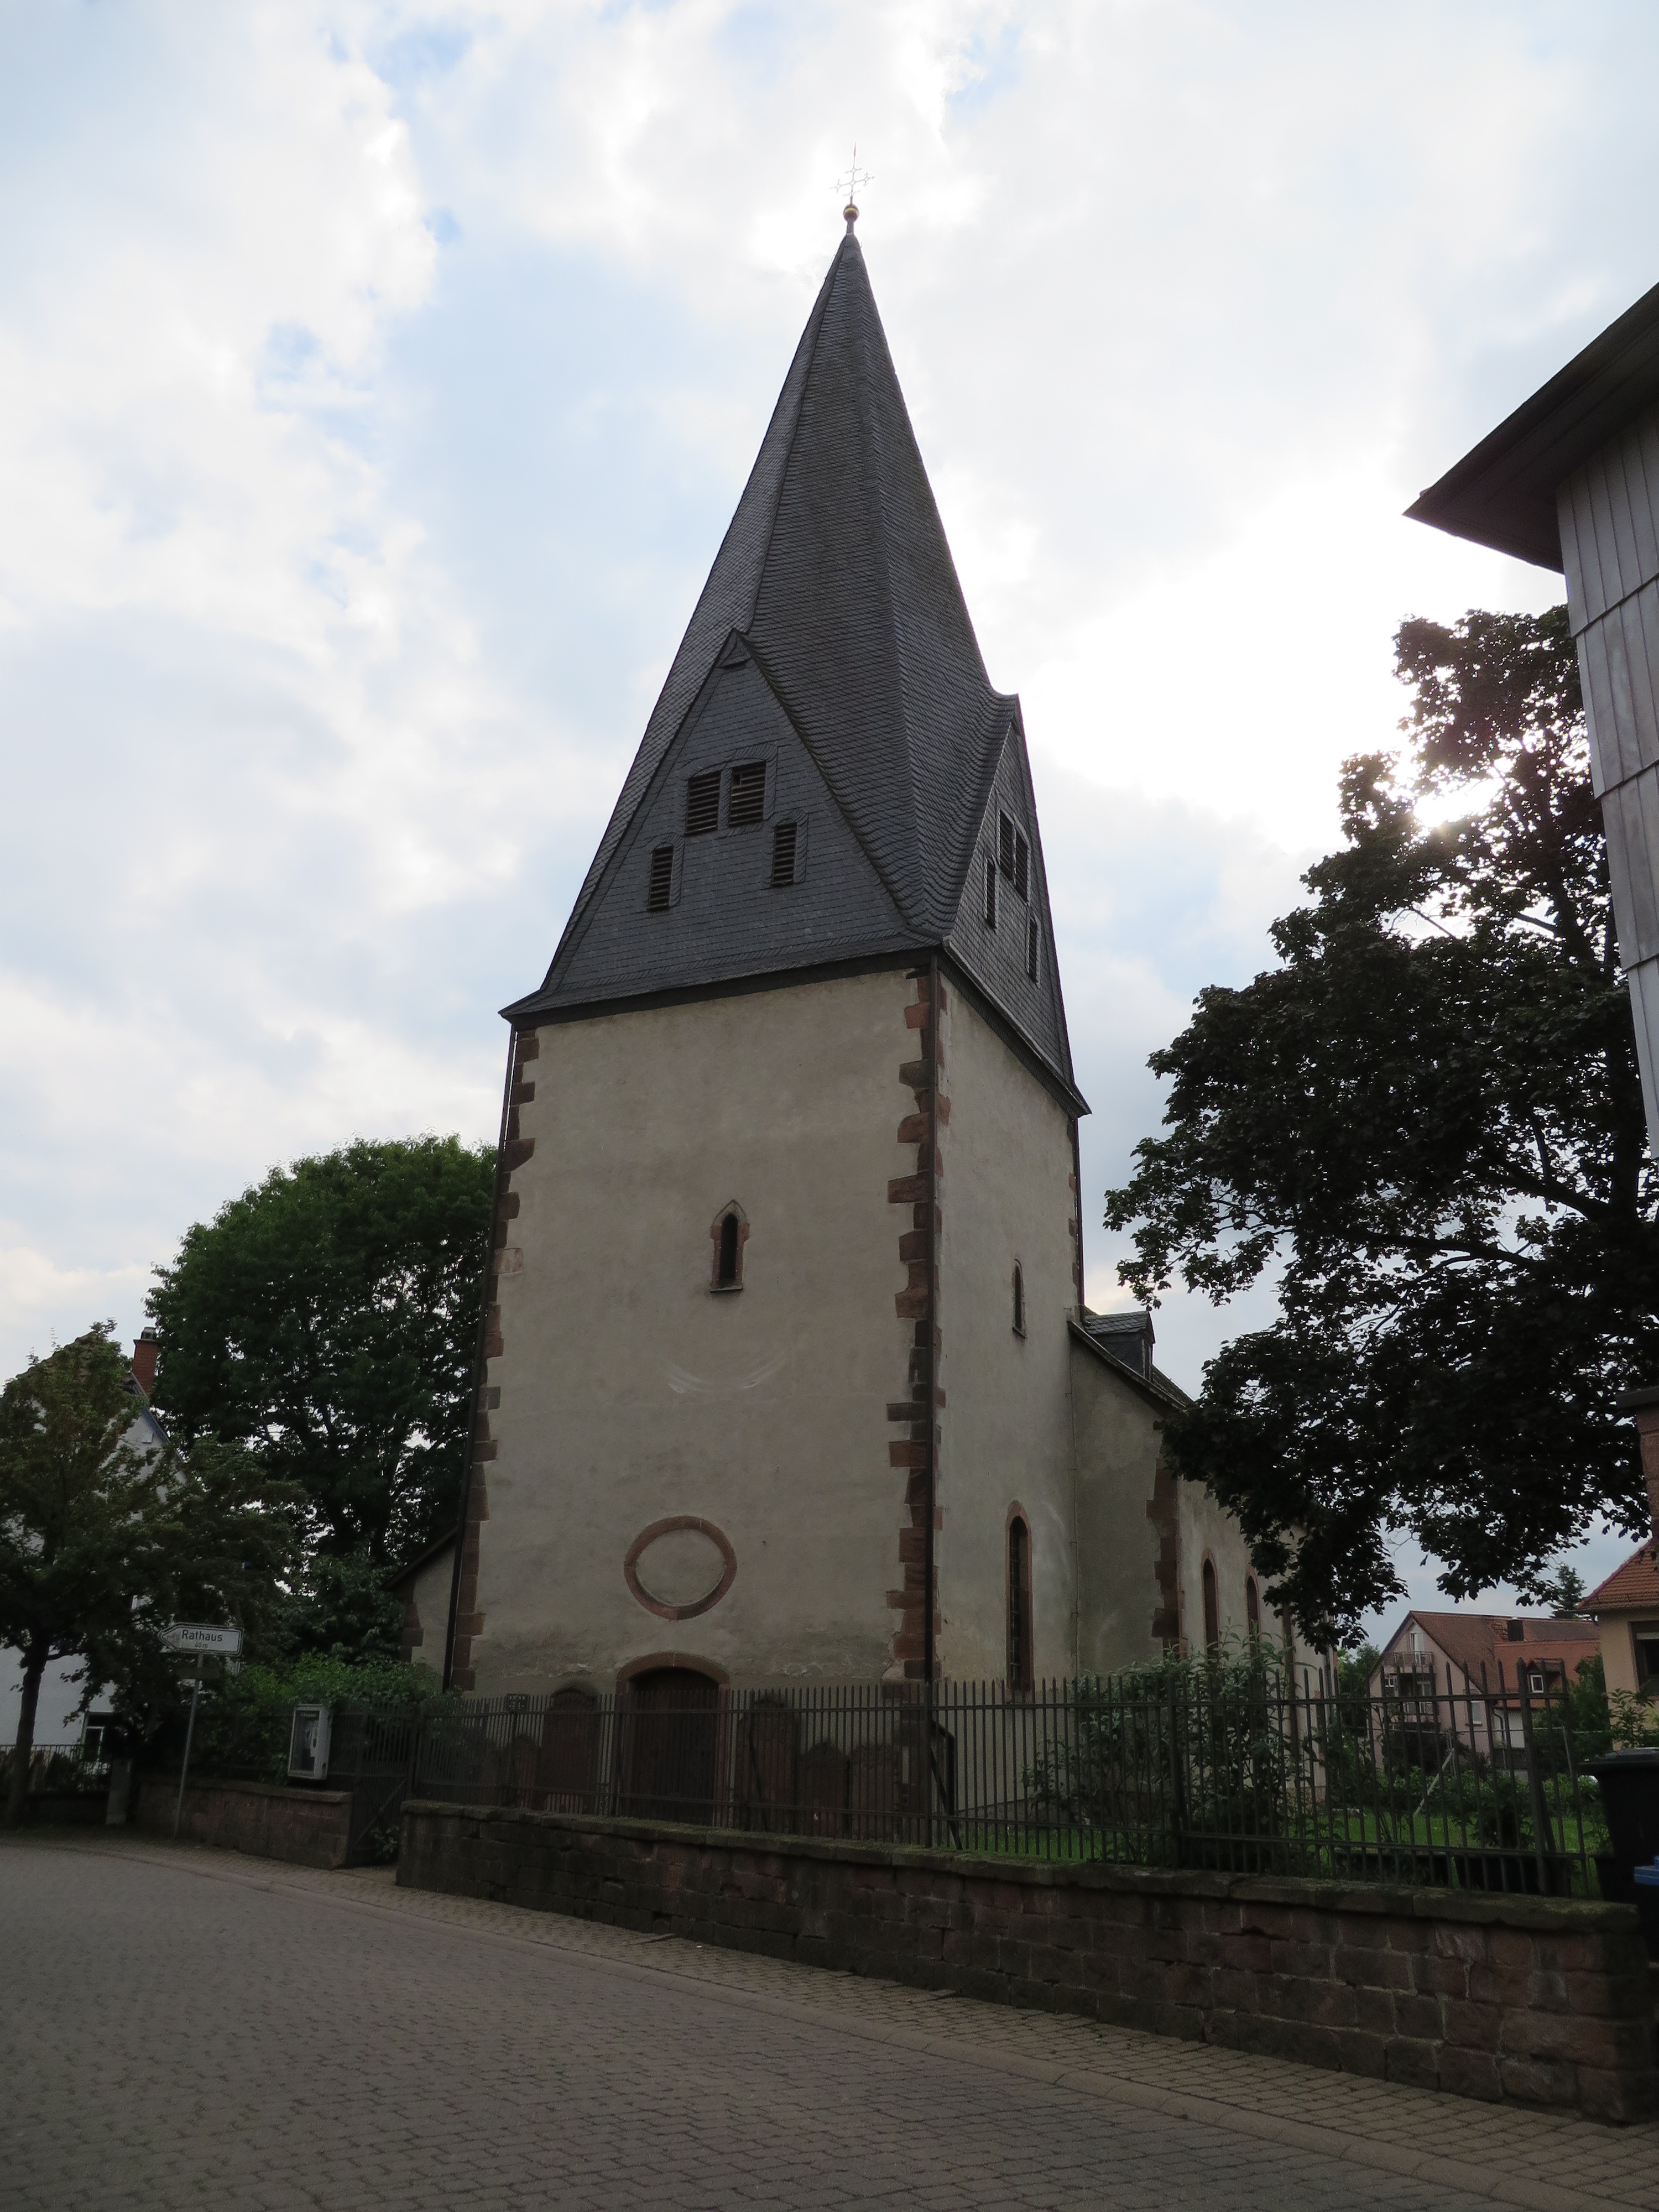 Martinskirche in Altenhasslau, photo by Maggie Hein, 2016